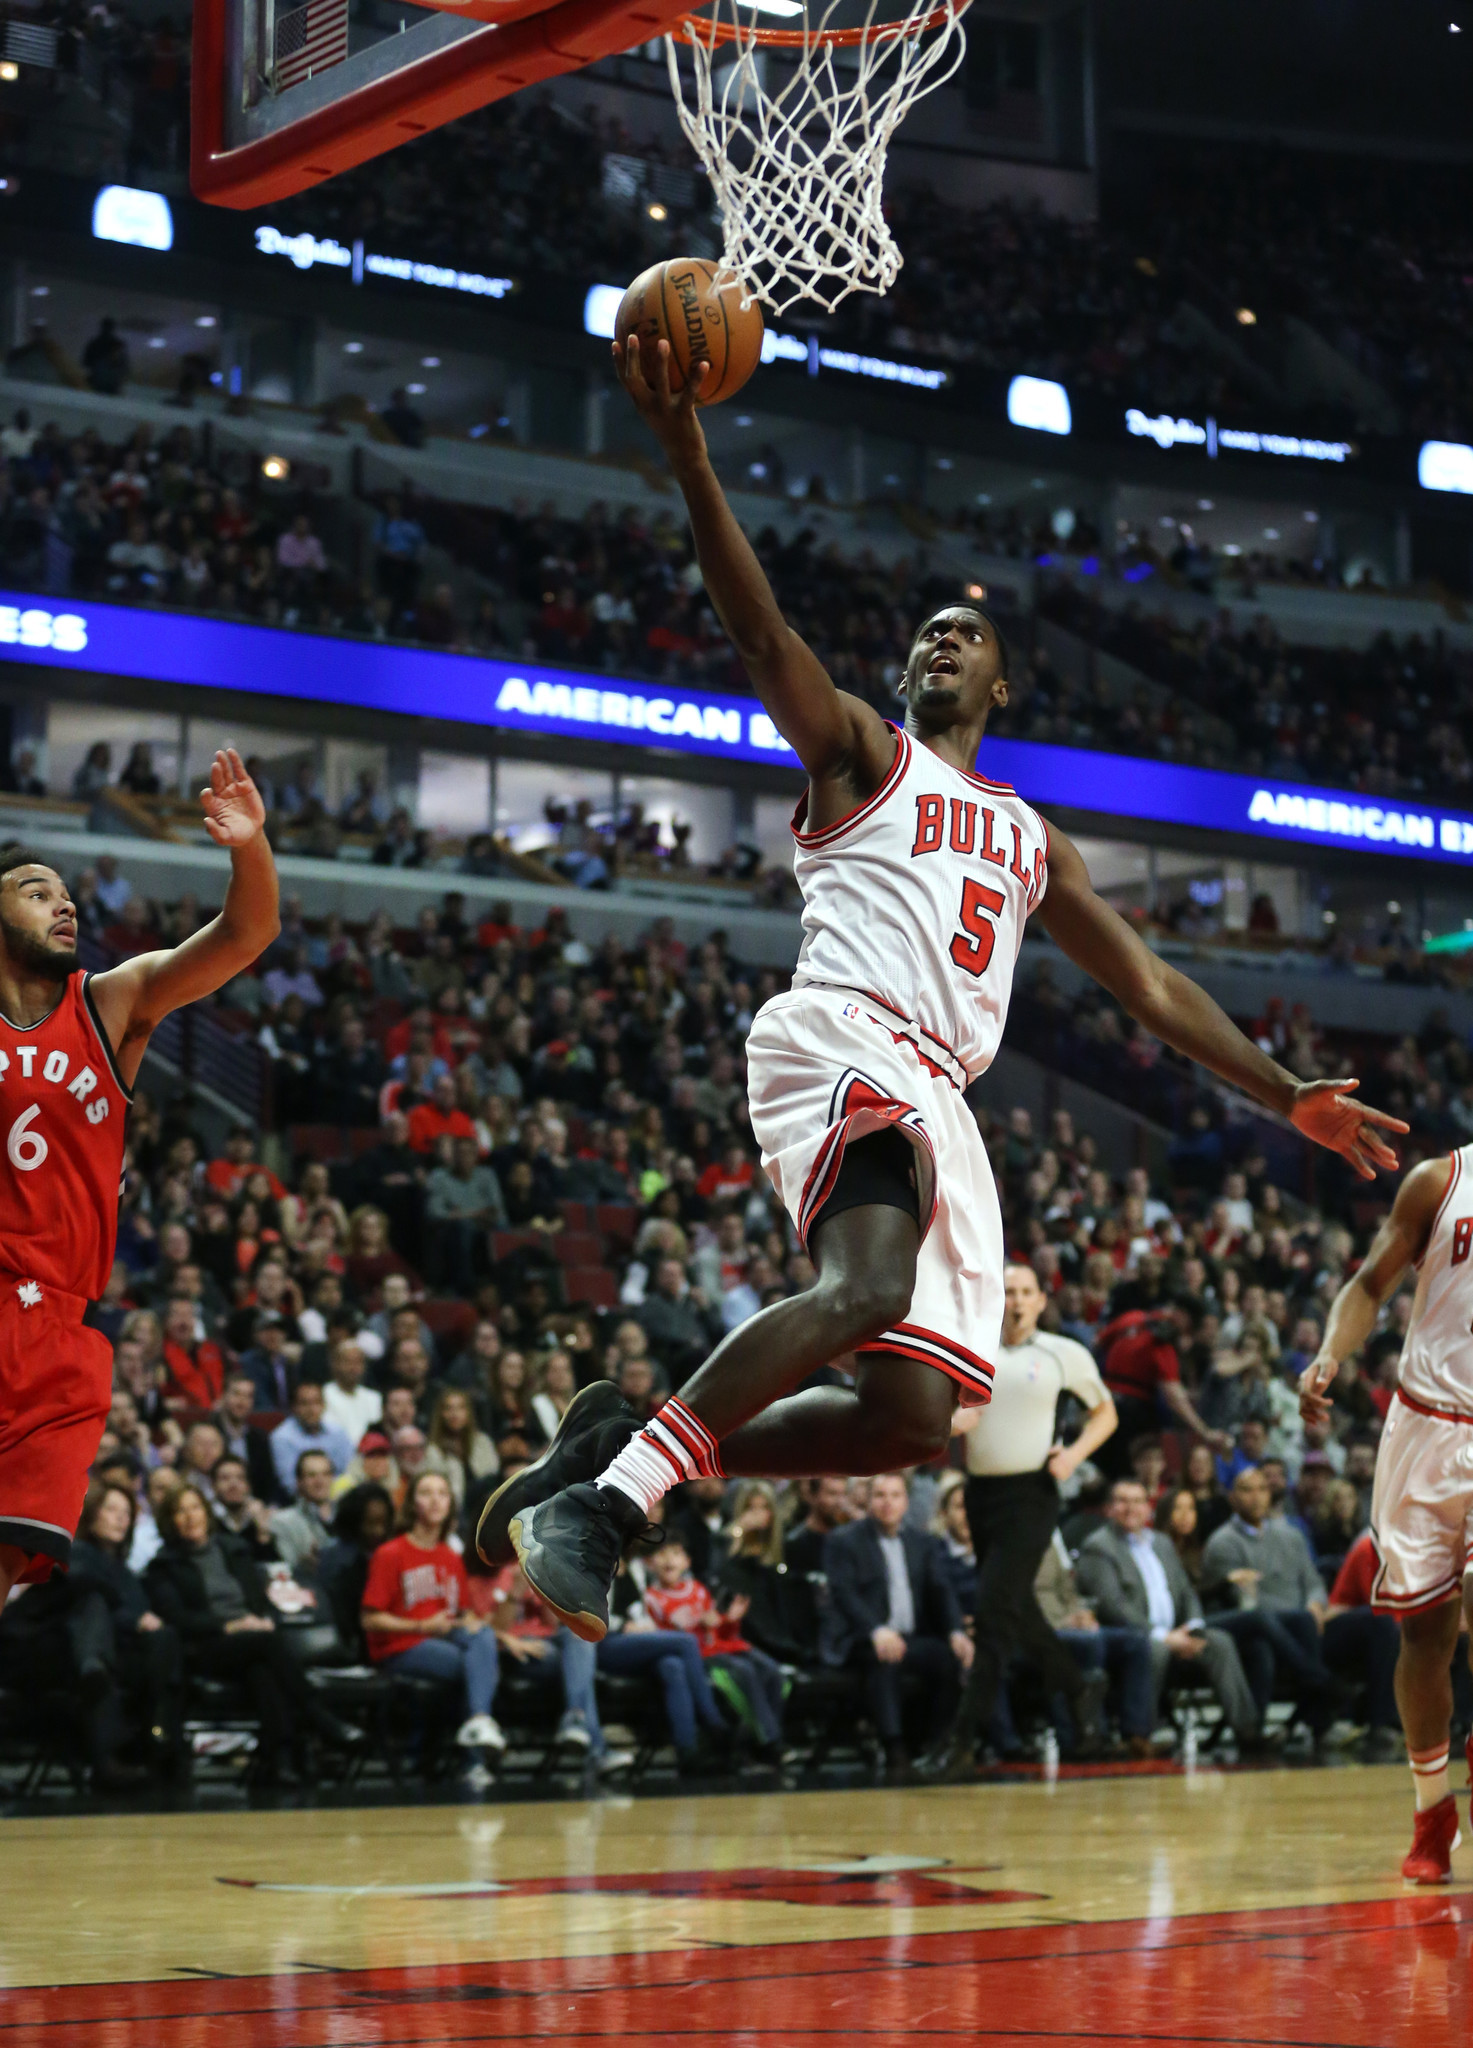 Shorthanded Bulls get Jimmy Butler back, lead Raptors 58-39 at half